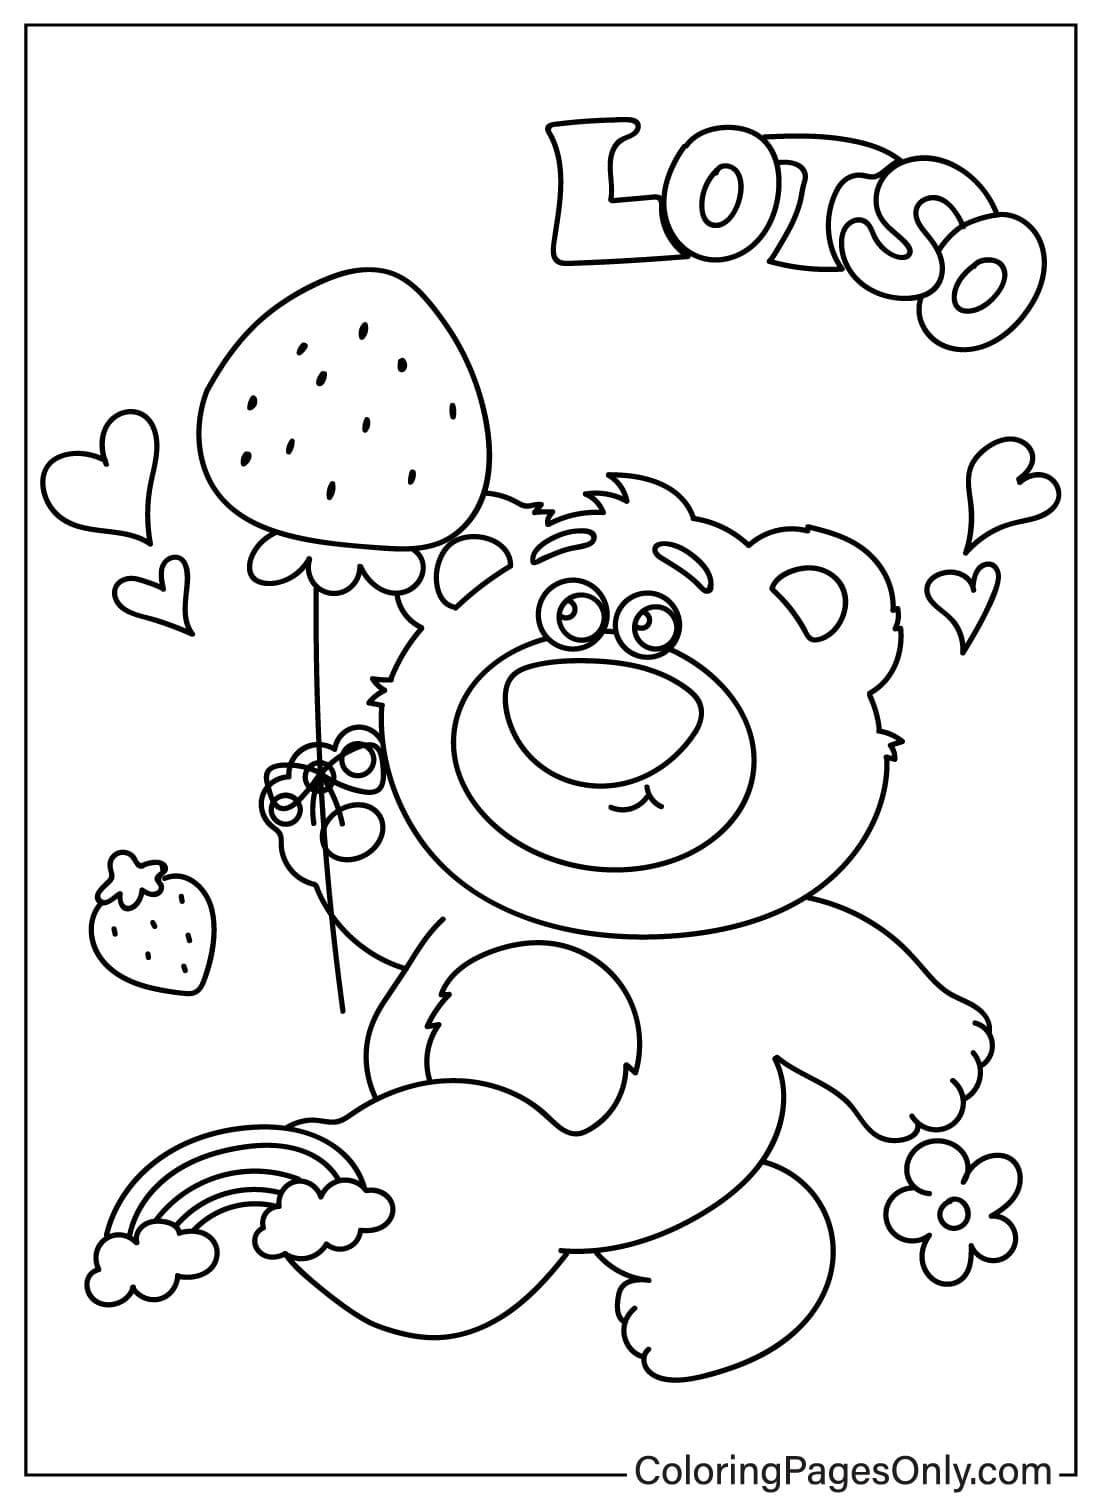 Printable Lotso Bear Coloring Page from Lotso Bear